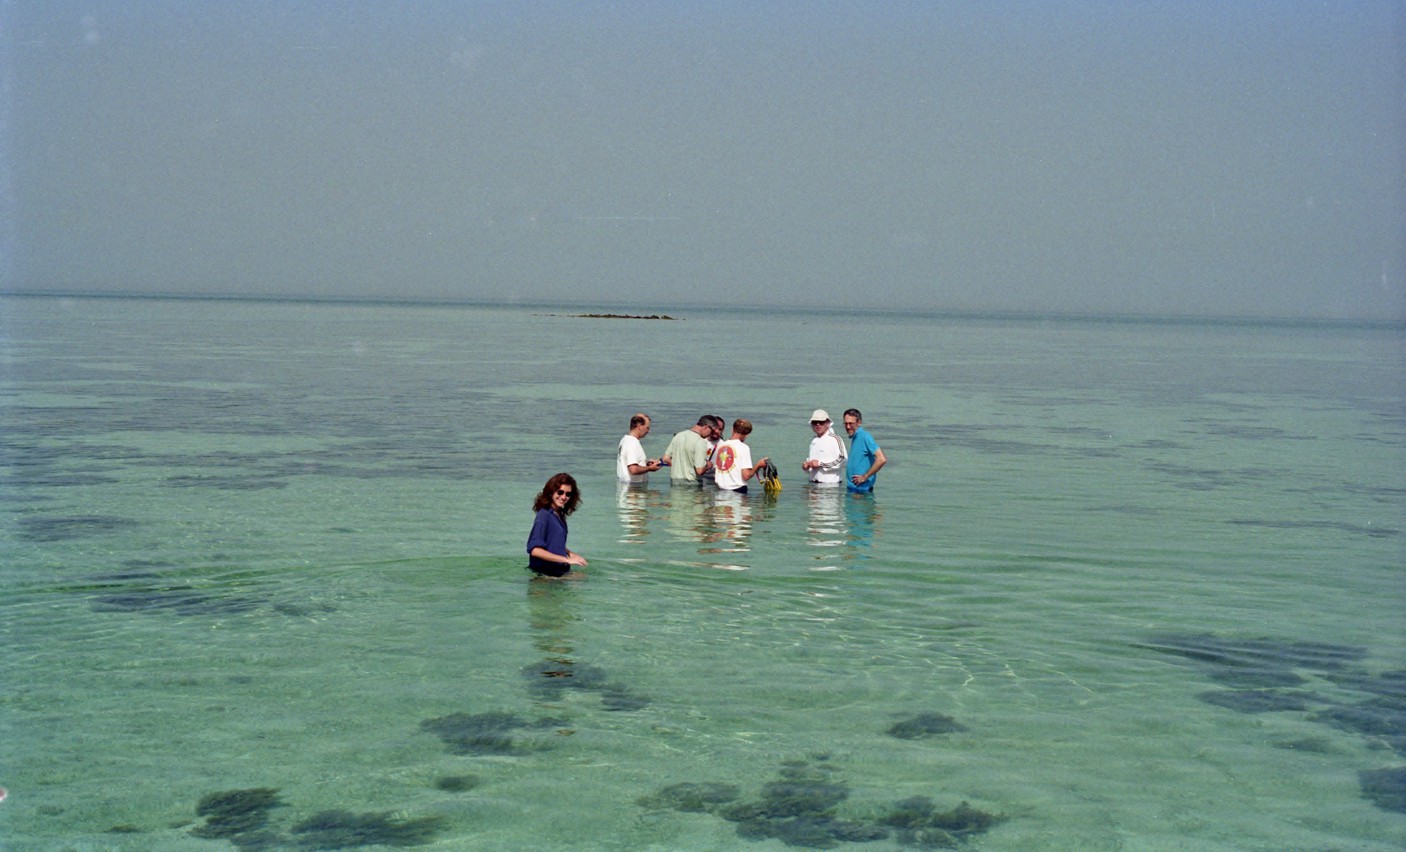 Geology fieldtrip to examine present day subtidal sediments, Trucial Coast, Abu Dhabi